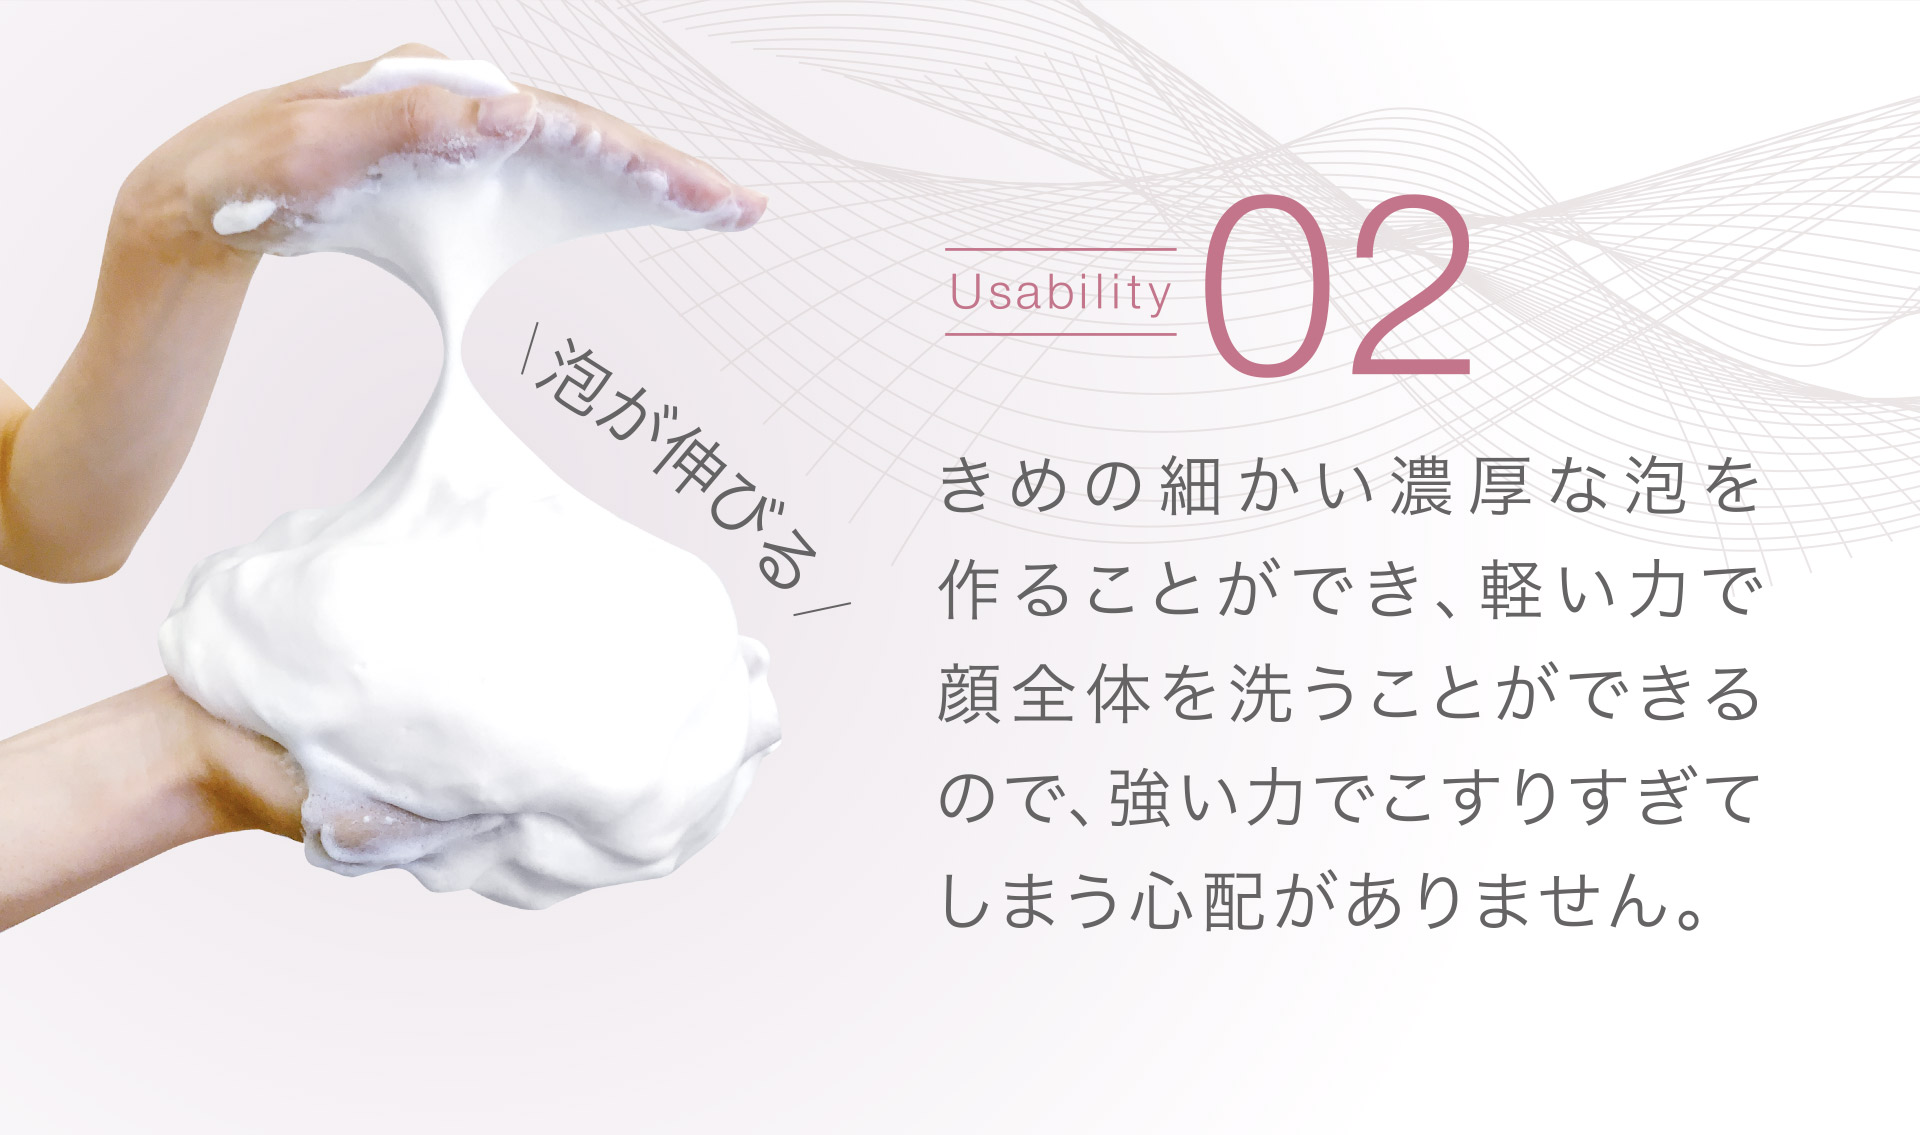 【Usability02】きめの細かい濃厚な泡を作ることができ、軽い力で顔全体を洗うことができるので、強い力でこすりすぎてしまうので心配がありません。